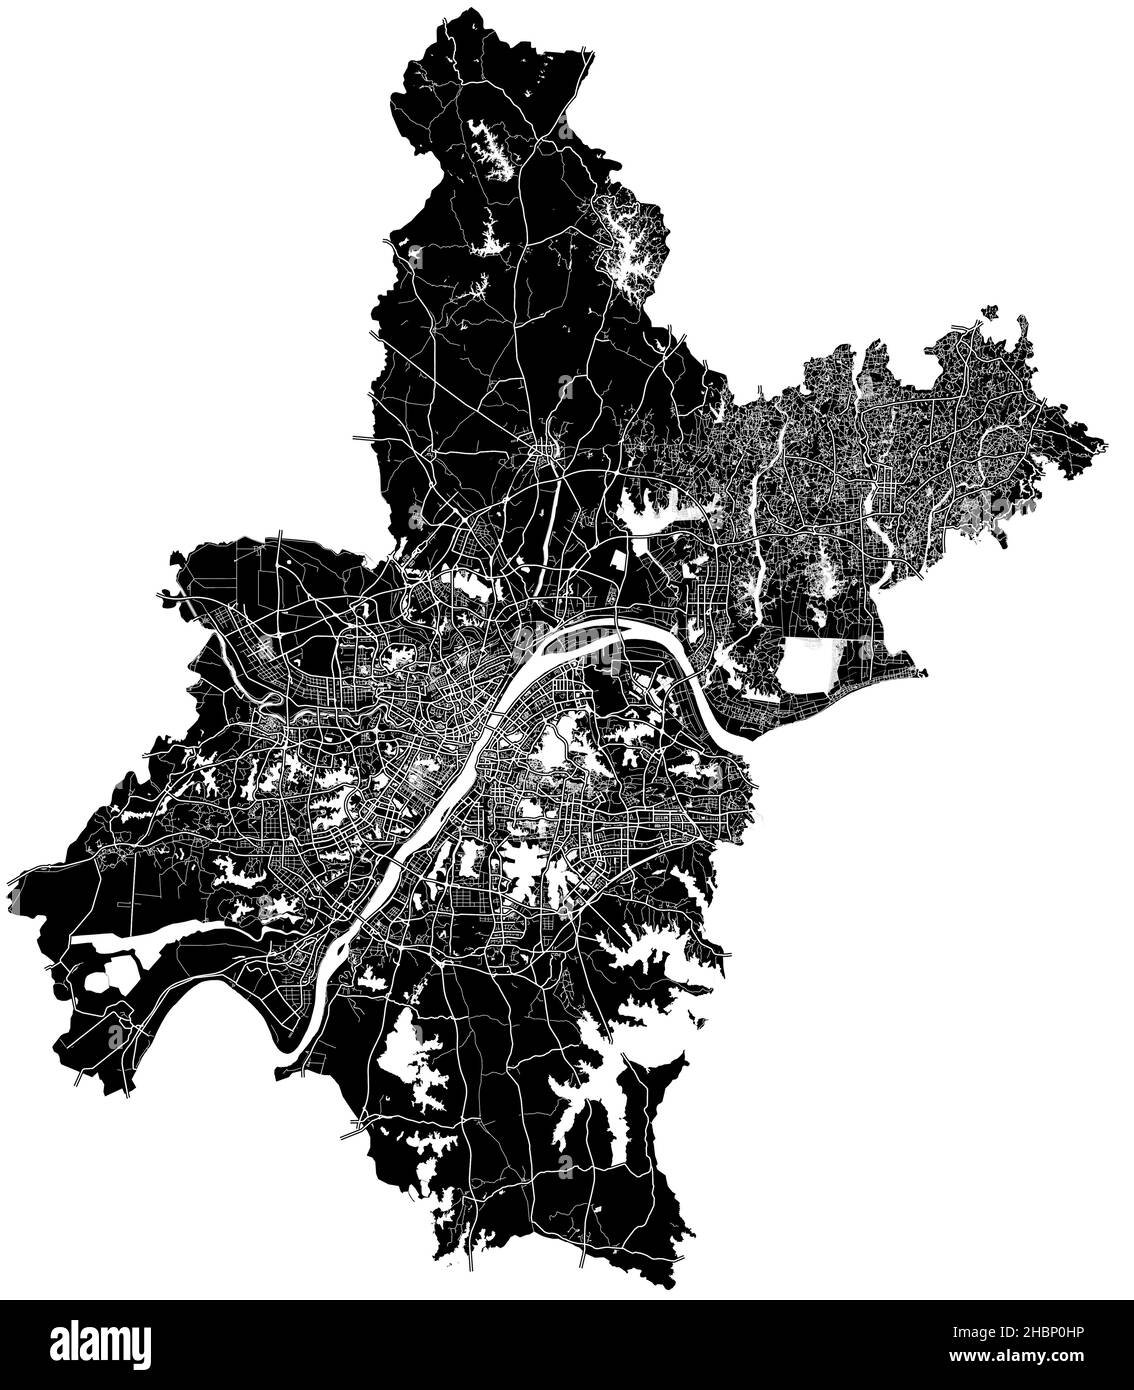 Wuhan, Cina, mappa vettoriale ad alta risoluzione con confini della città e percorsi modificabili. La mappa della città è stata disegnata con aree bianche e linee per le strade principali, s Illustrazione Vettoriale